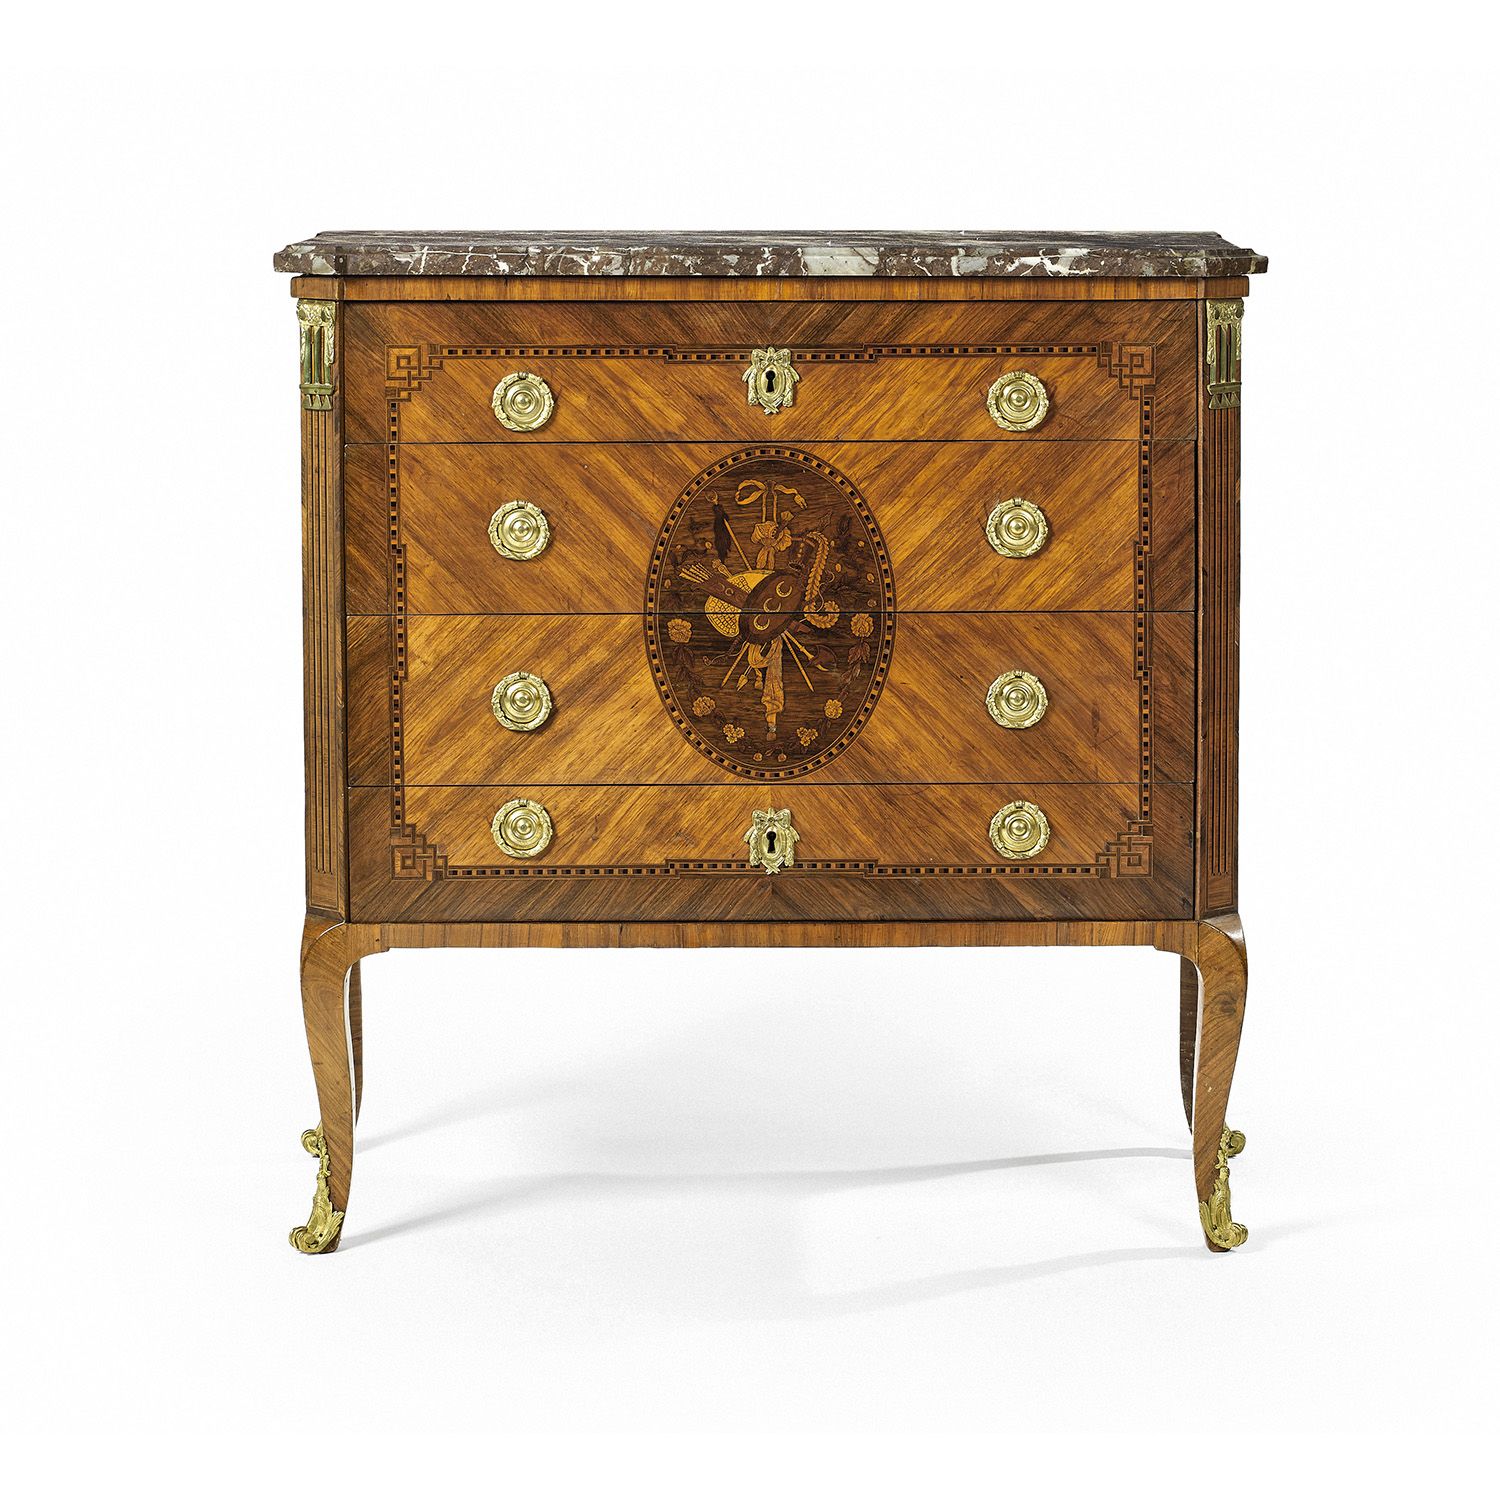 Null 抽屉柜，印有April，为Etienne avril（1748-1791），有Jurande标记，过渡时期
由紫檀木，梧桐木和发黑的木皮制成，镶嵌着希&hellip;